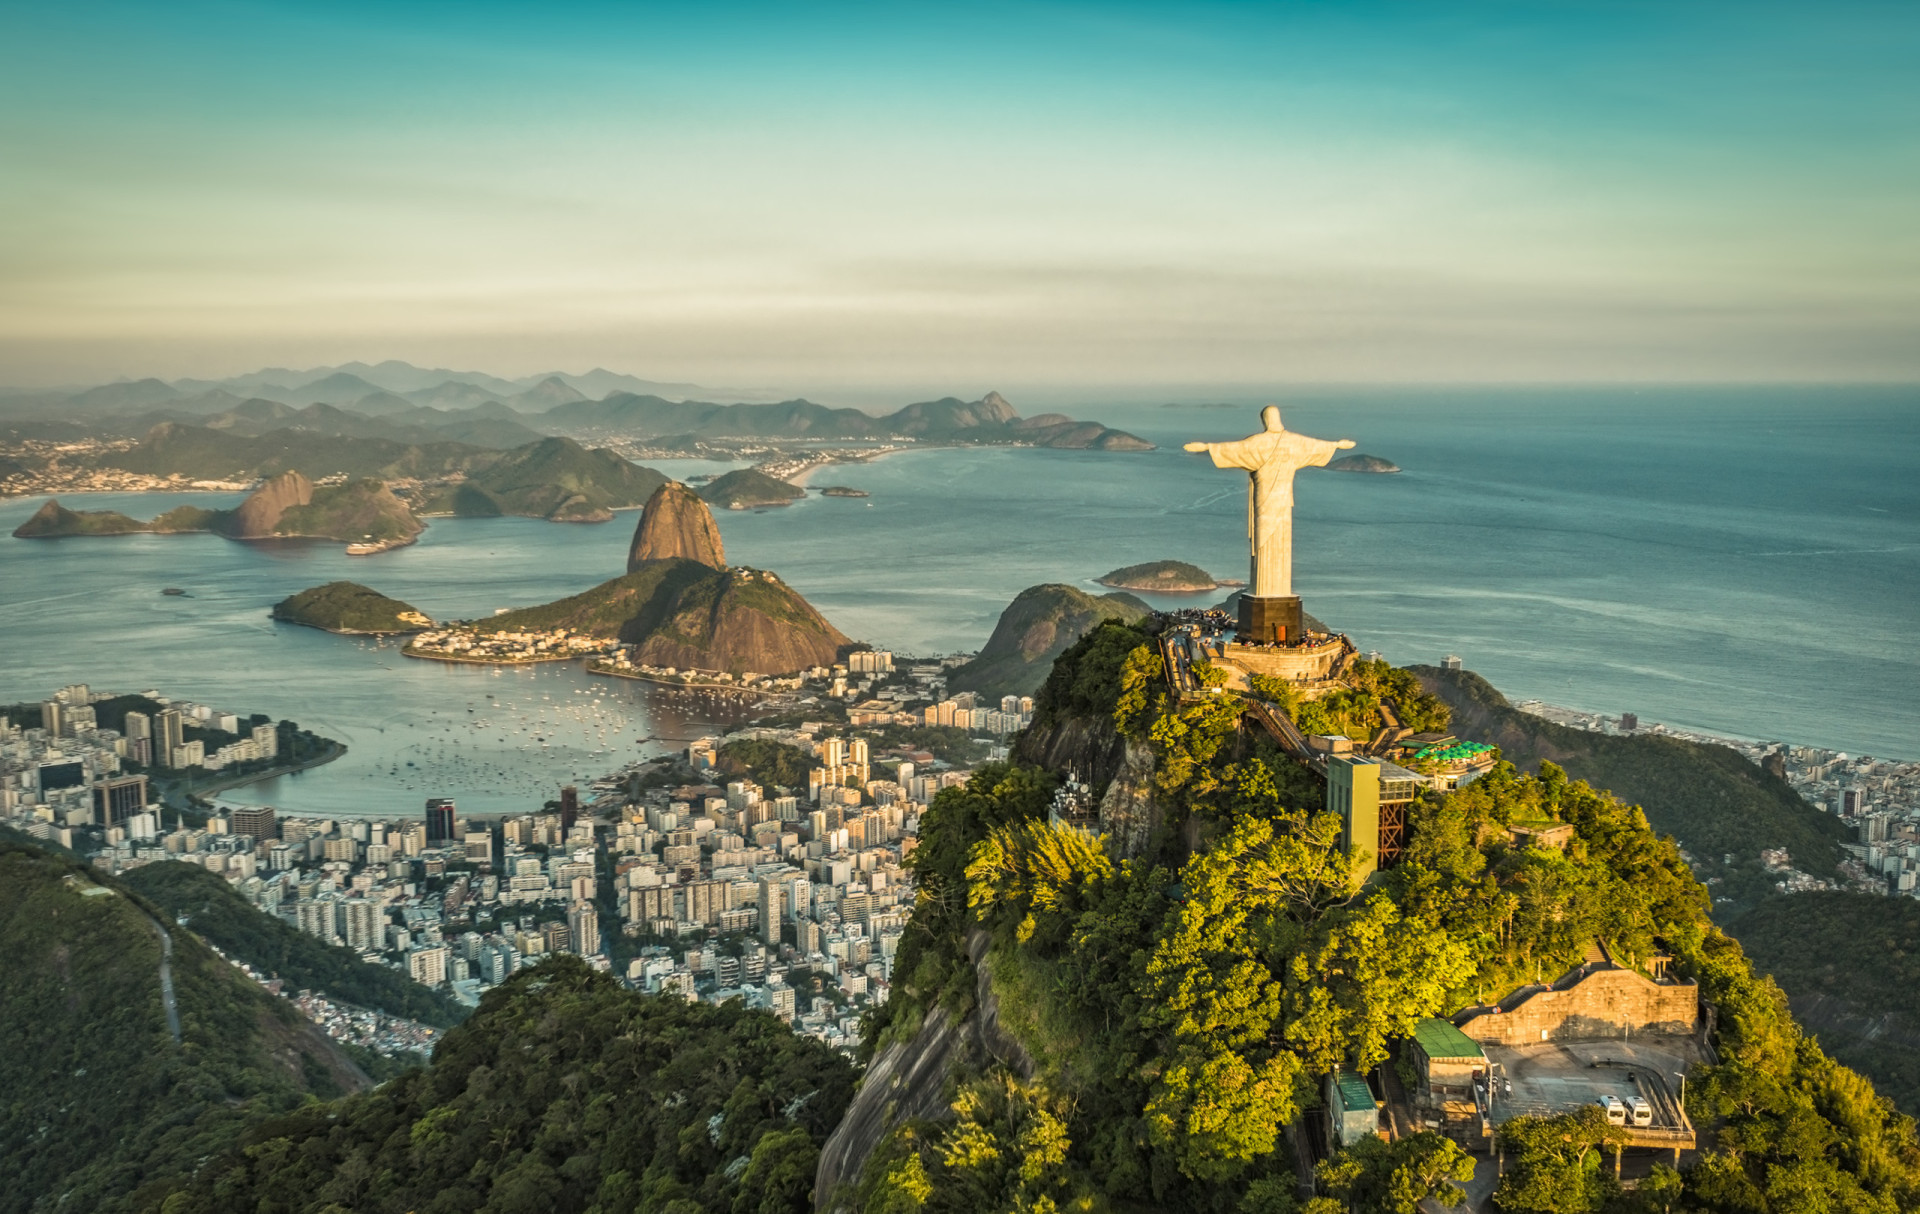 <p>Le Brésil est l'un des pays les plus importants du monde sur le plan culturel en ce qui concerne le football, et son équipe nationale compte des supporters dans le monde entier ! Le Brésil est également célèbre pour sa musique, avec des genres tels que la samba, la bossa nova, le forró et le funk. Sur le plan culinaire, la feijoada est présente dans les restaurants brésiliens du monde entier.</p><p>Tu pourrais aussi aimer:<a href="https://www.starsinsider.com/n/418180?utm_source=msn.com&utm_medium=display&utm_campaign=referral_description&utm_content=627257"> 30 femmes qui marqueront sûrement l'année 2020</a></p>